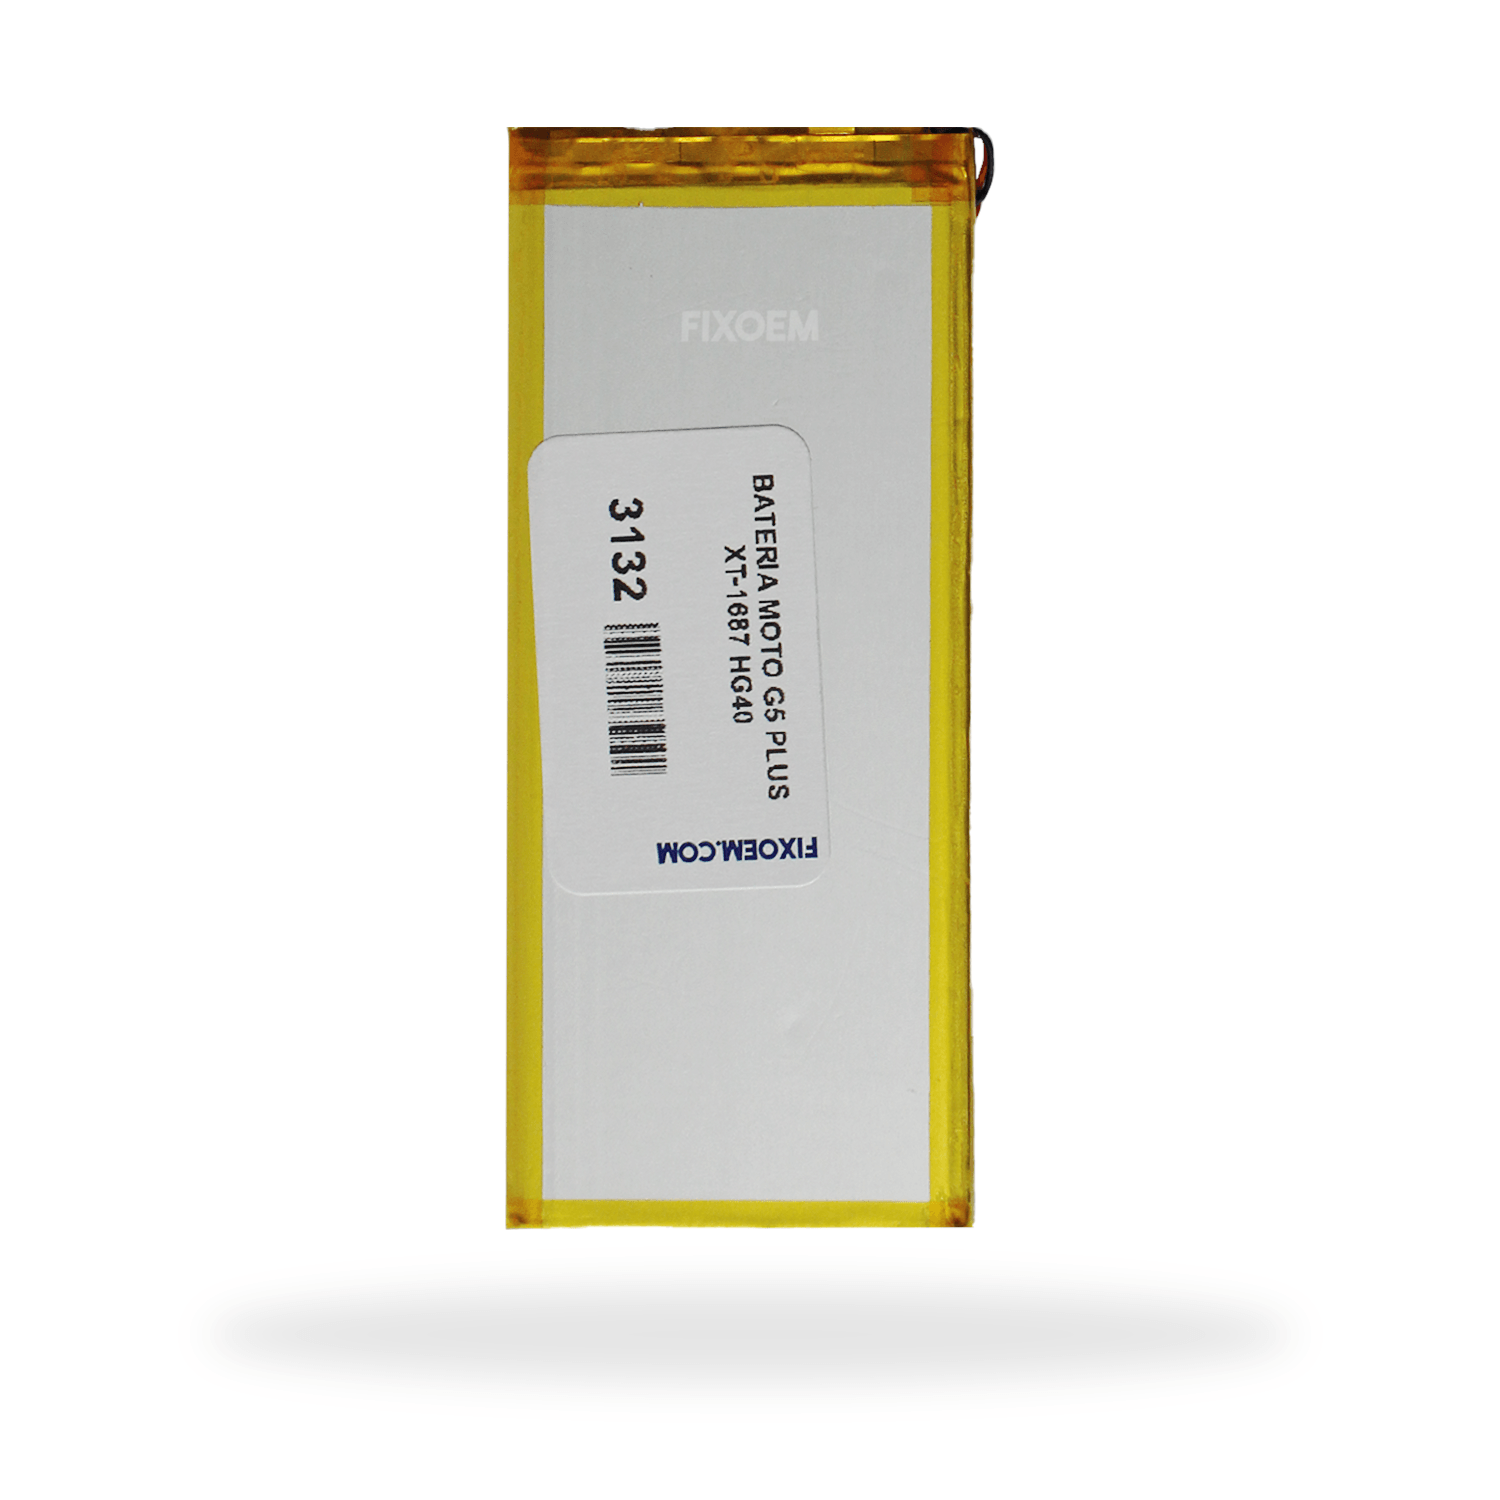 Bateria Moto G5 Plus Xt-1687 Hg40 a solo $ 120.00 Refaccion y puestos celulares, refurbish y microelectronica.- FixOEM